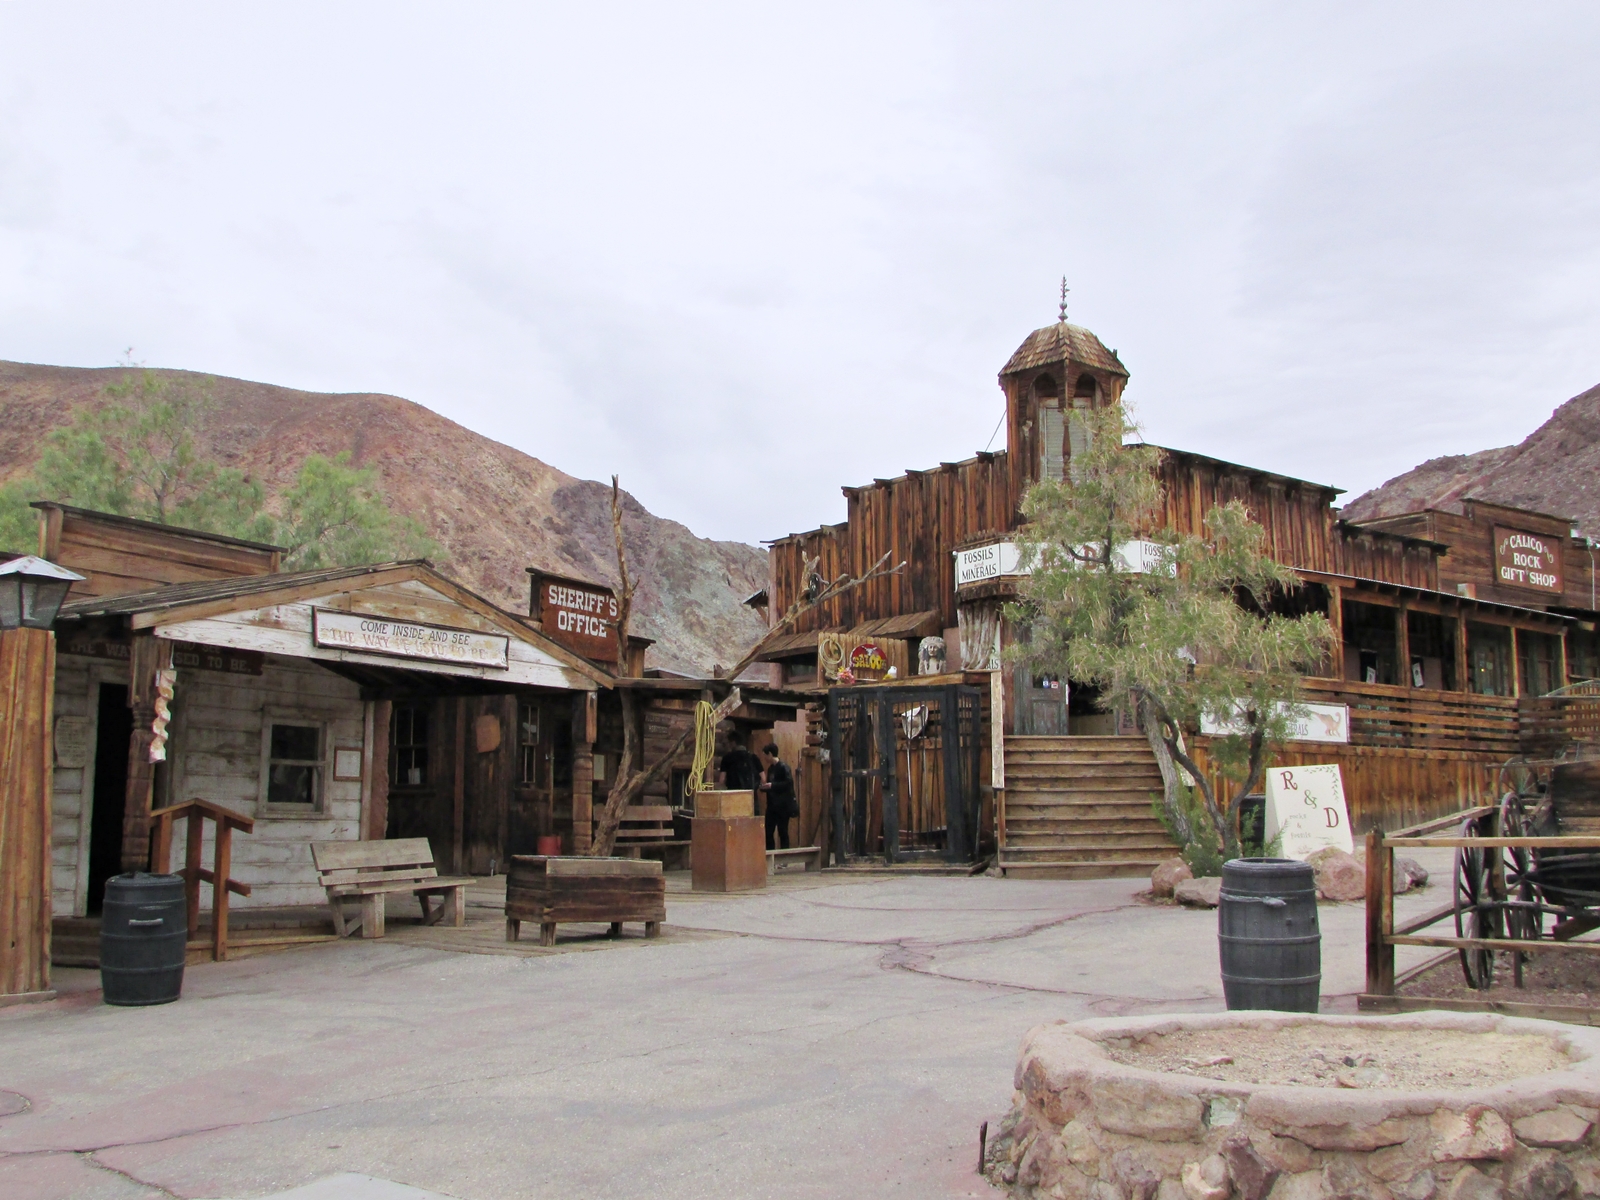 Calico Ghost town - usa rundreise - geisterstadt in der Mojave Wüste - Scheriff´s Office - Roadtrip - Fashionladyloves by Tamara Wagner Travelblog